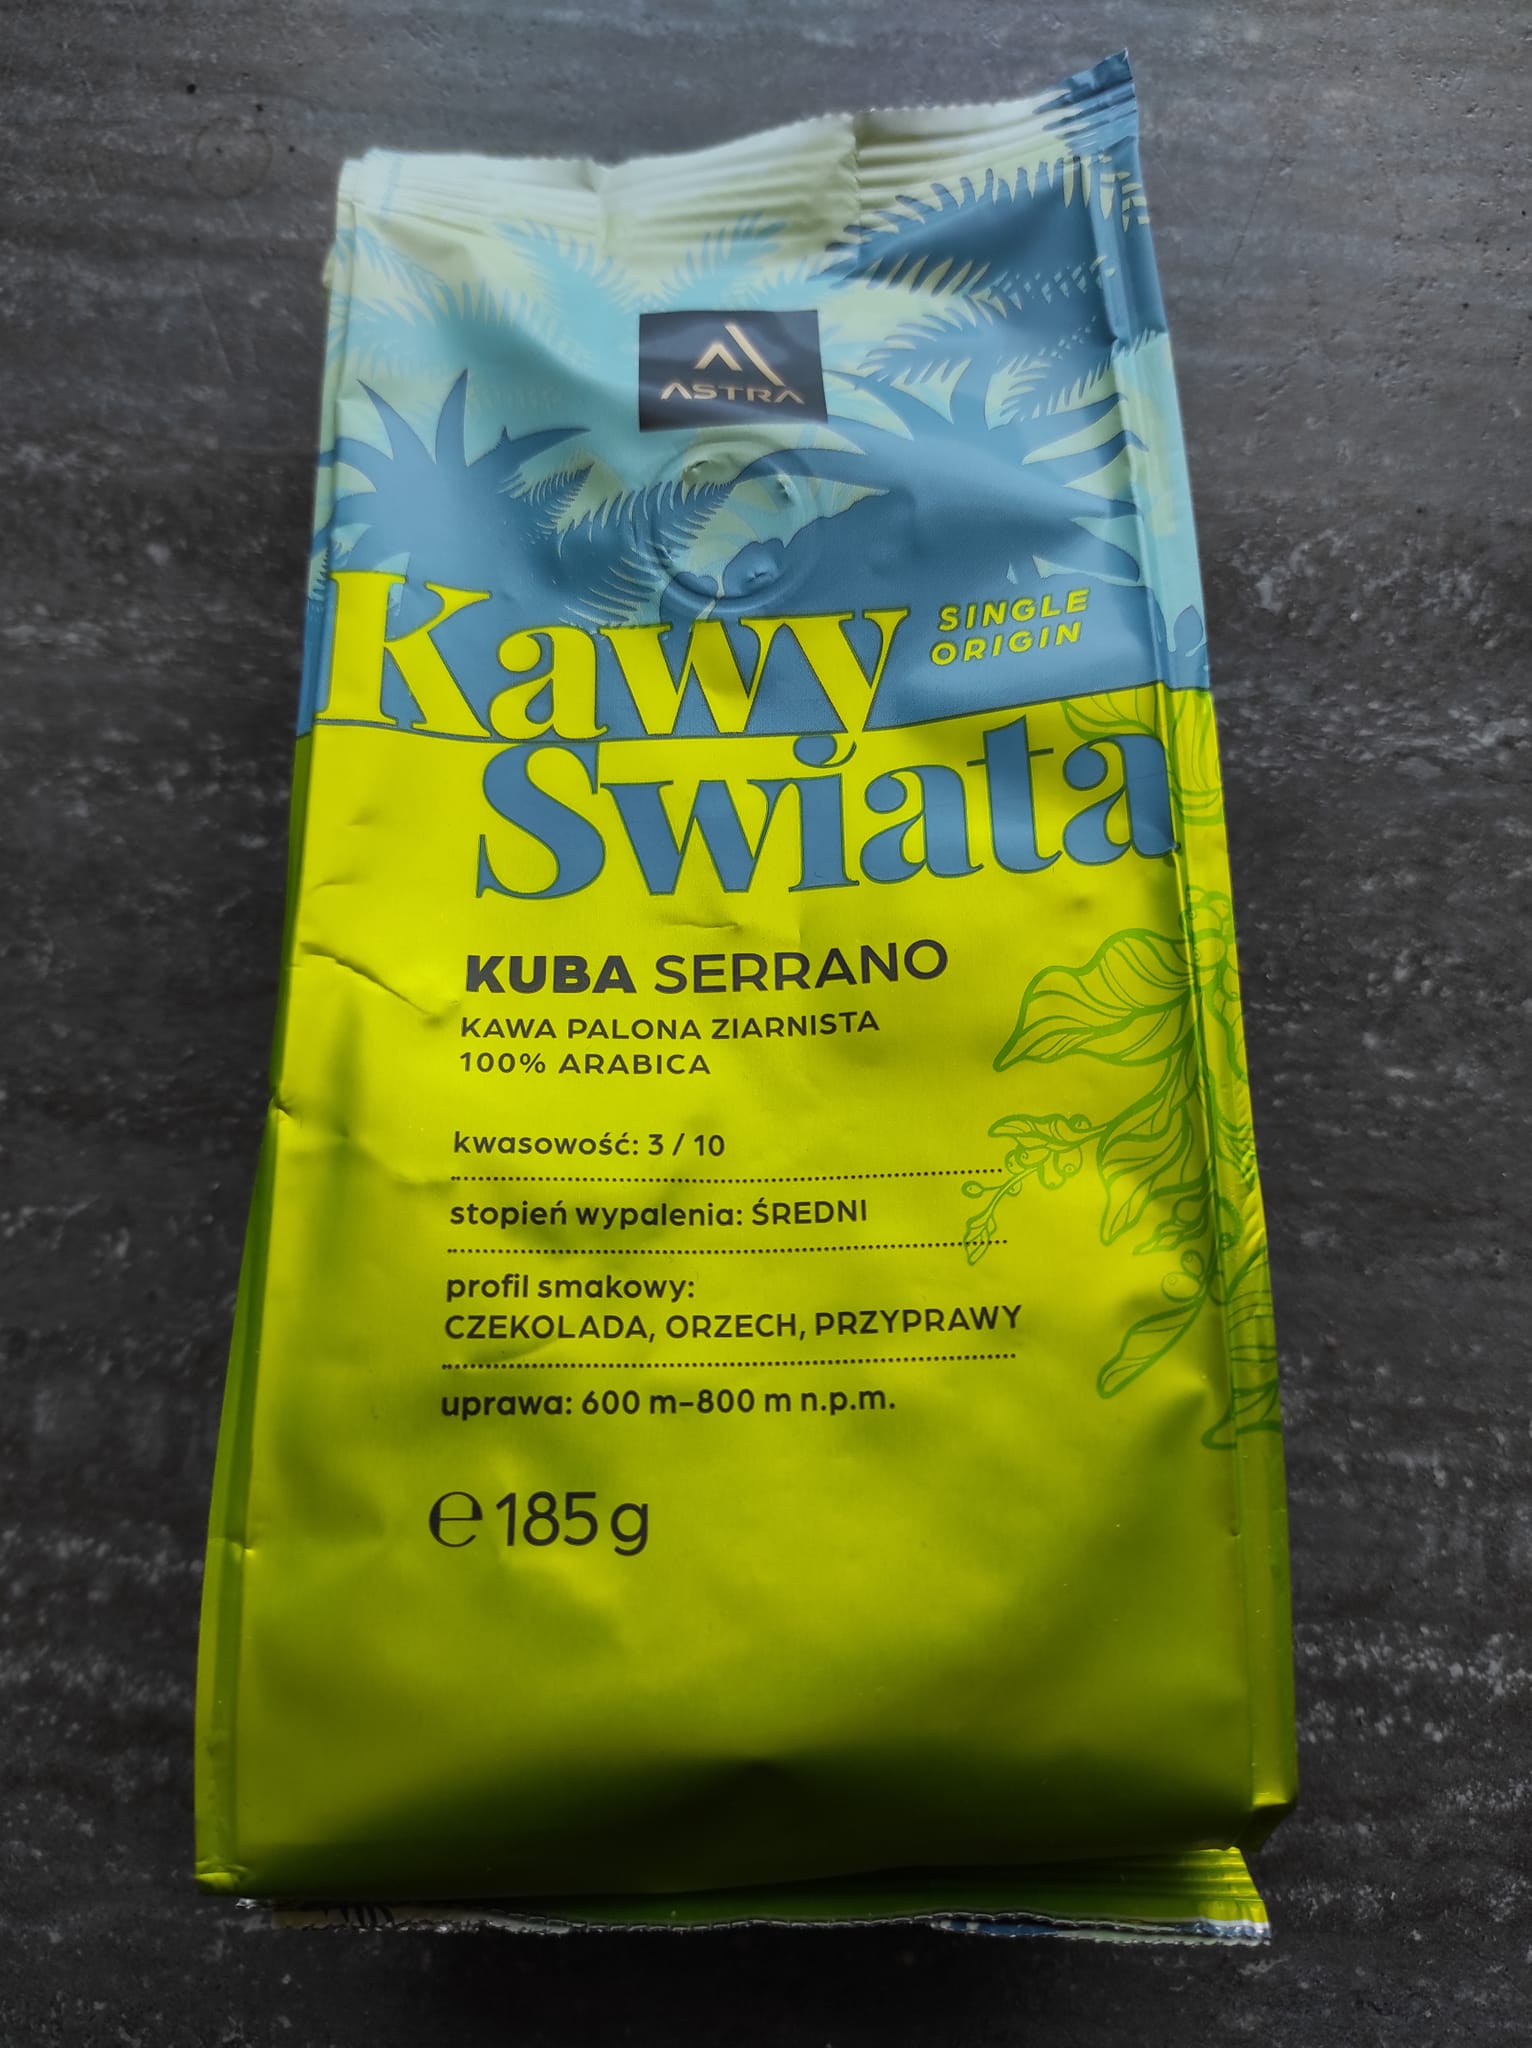 Kawa ziarnista Kuba Serrano Kawy Świata – Astra 5 (1)